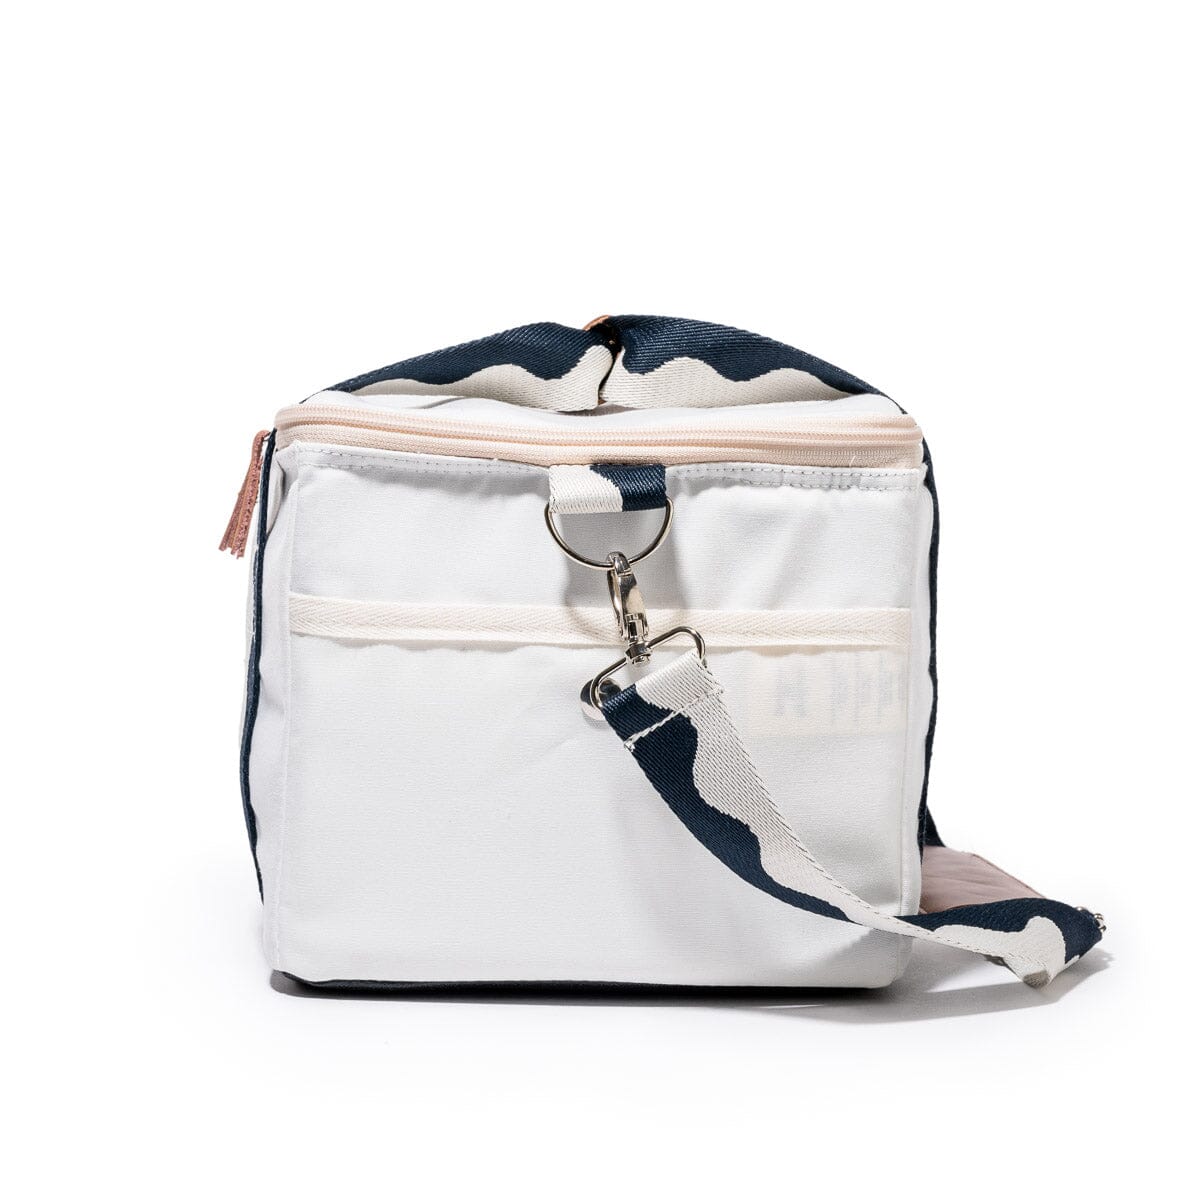 The Premium Cooler Bag - Rivie White Premium Cooler Bag Business & Pleasure Co Aus 